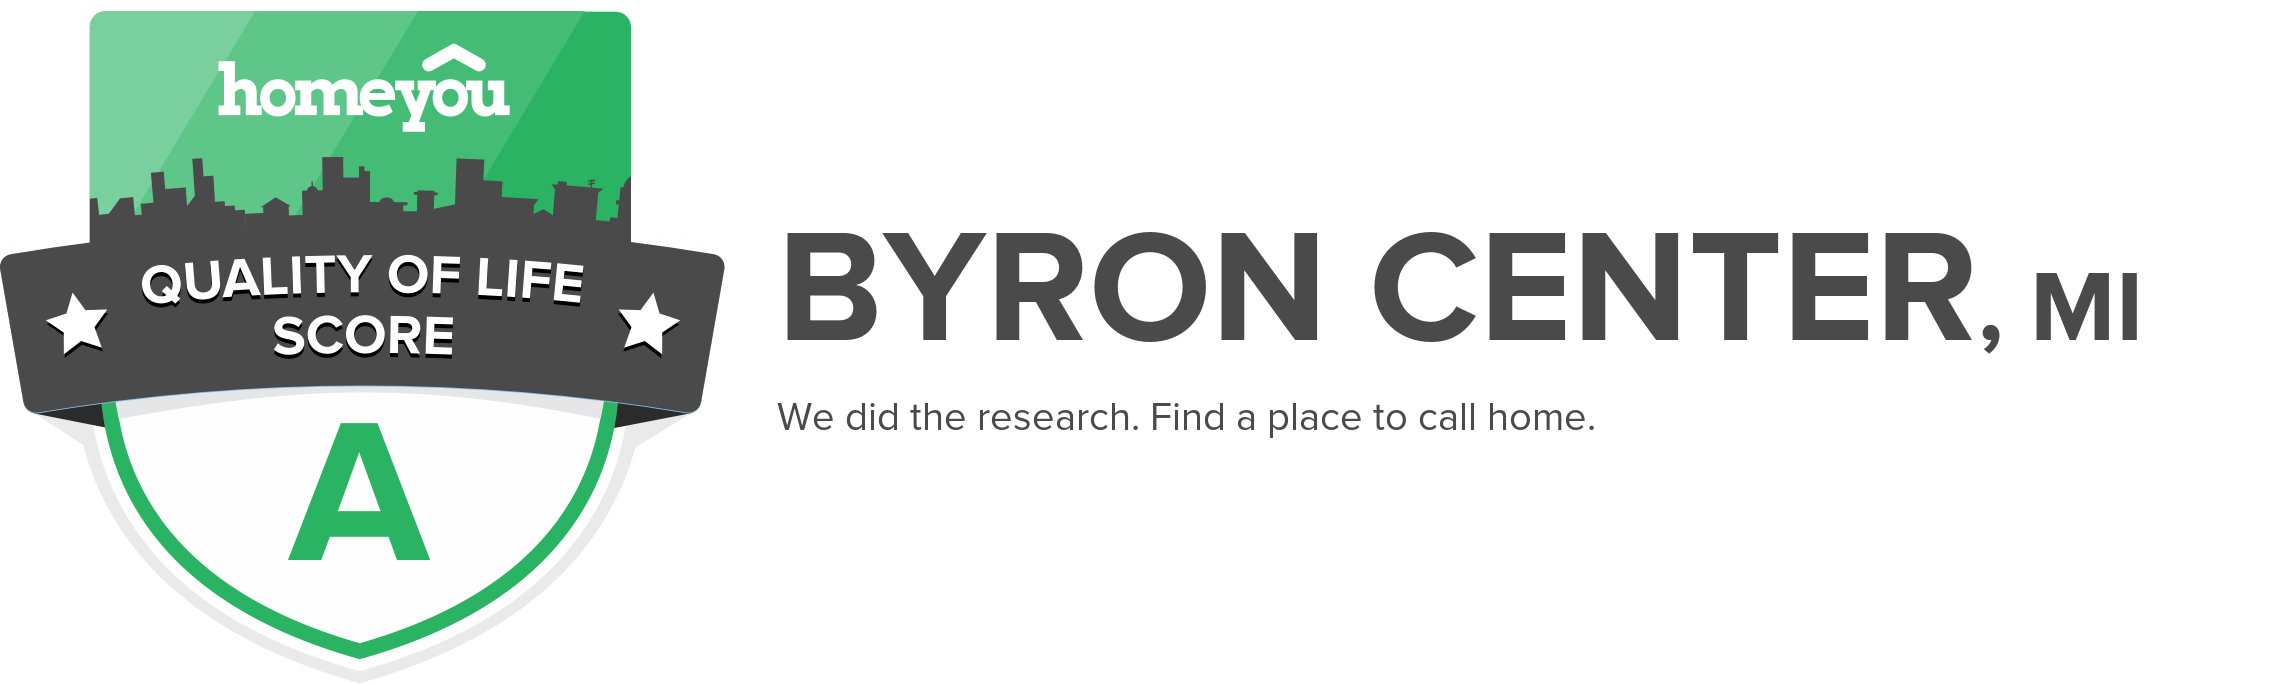 Byron Center, MI